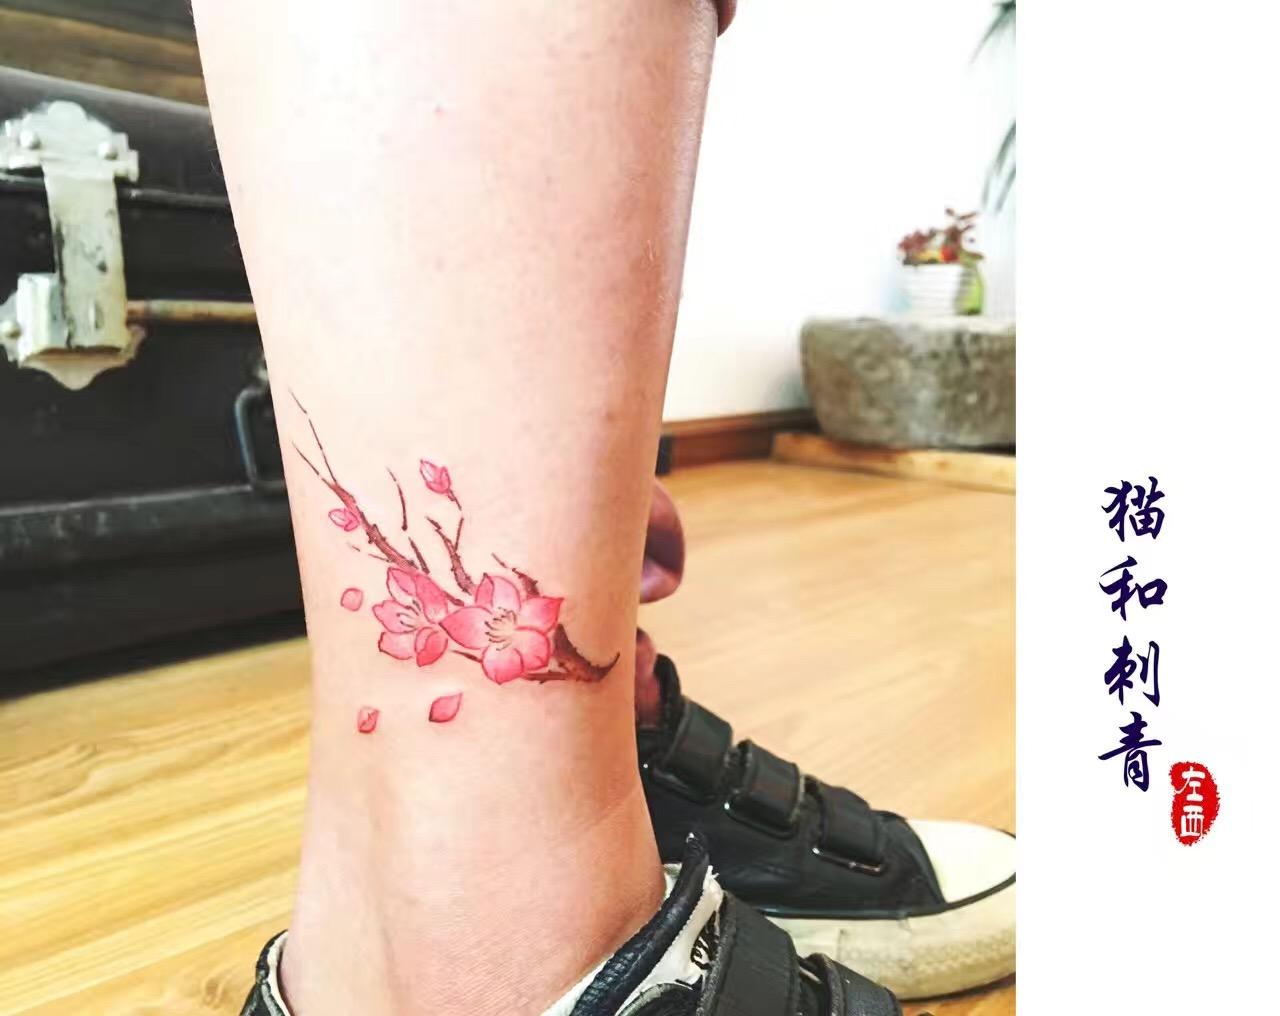 脚踝羽毛纹身_女生纹身_上海由龙刺青